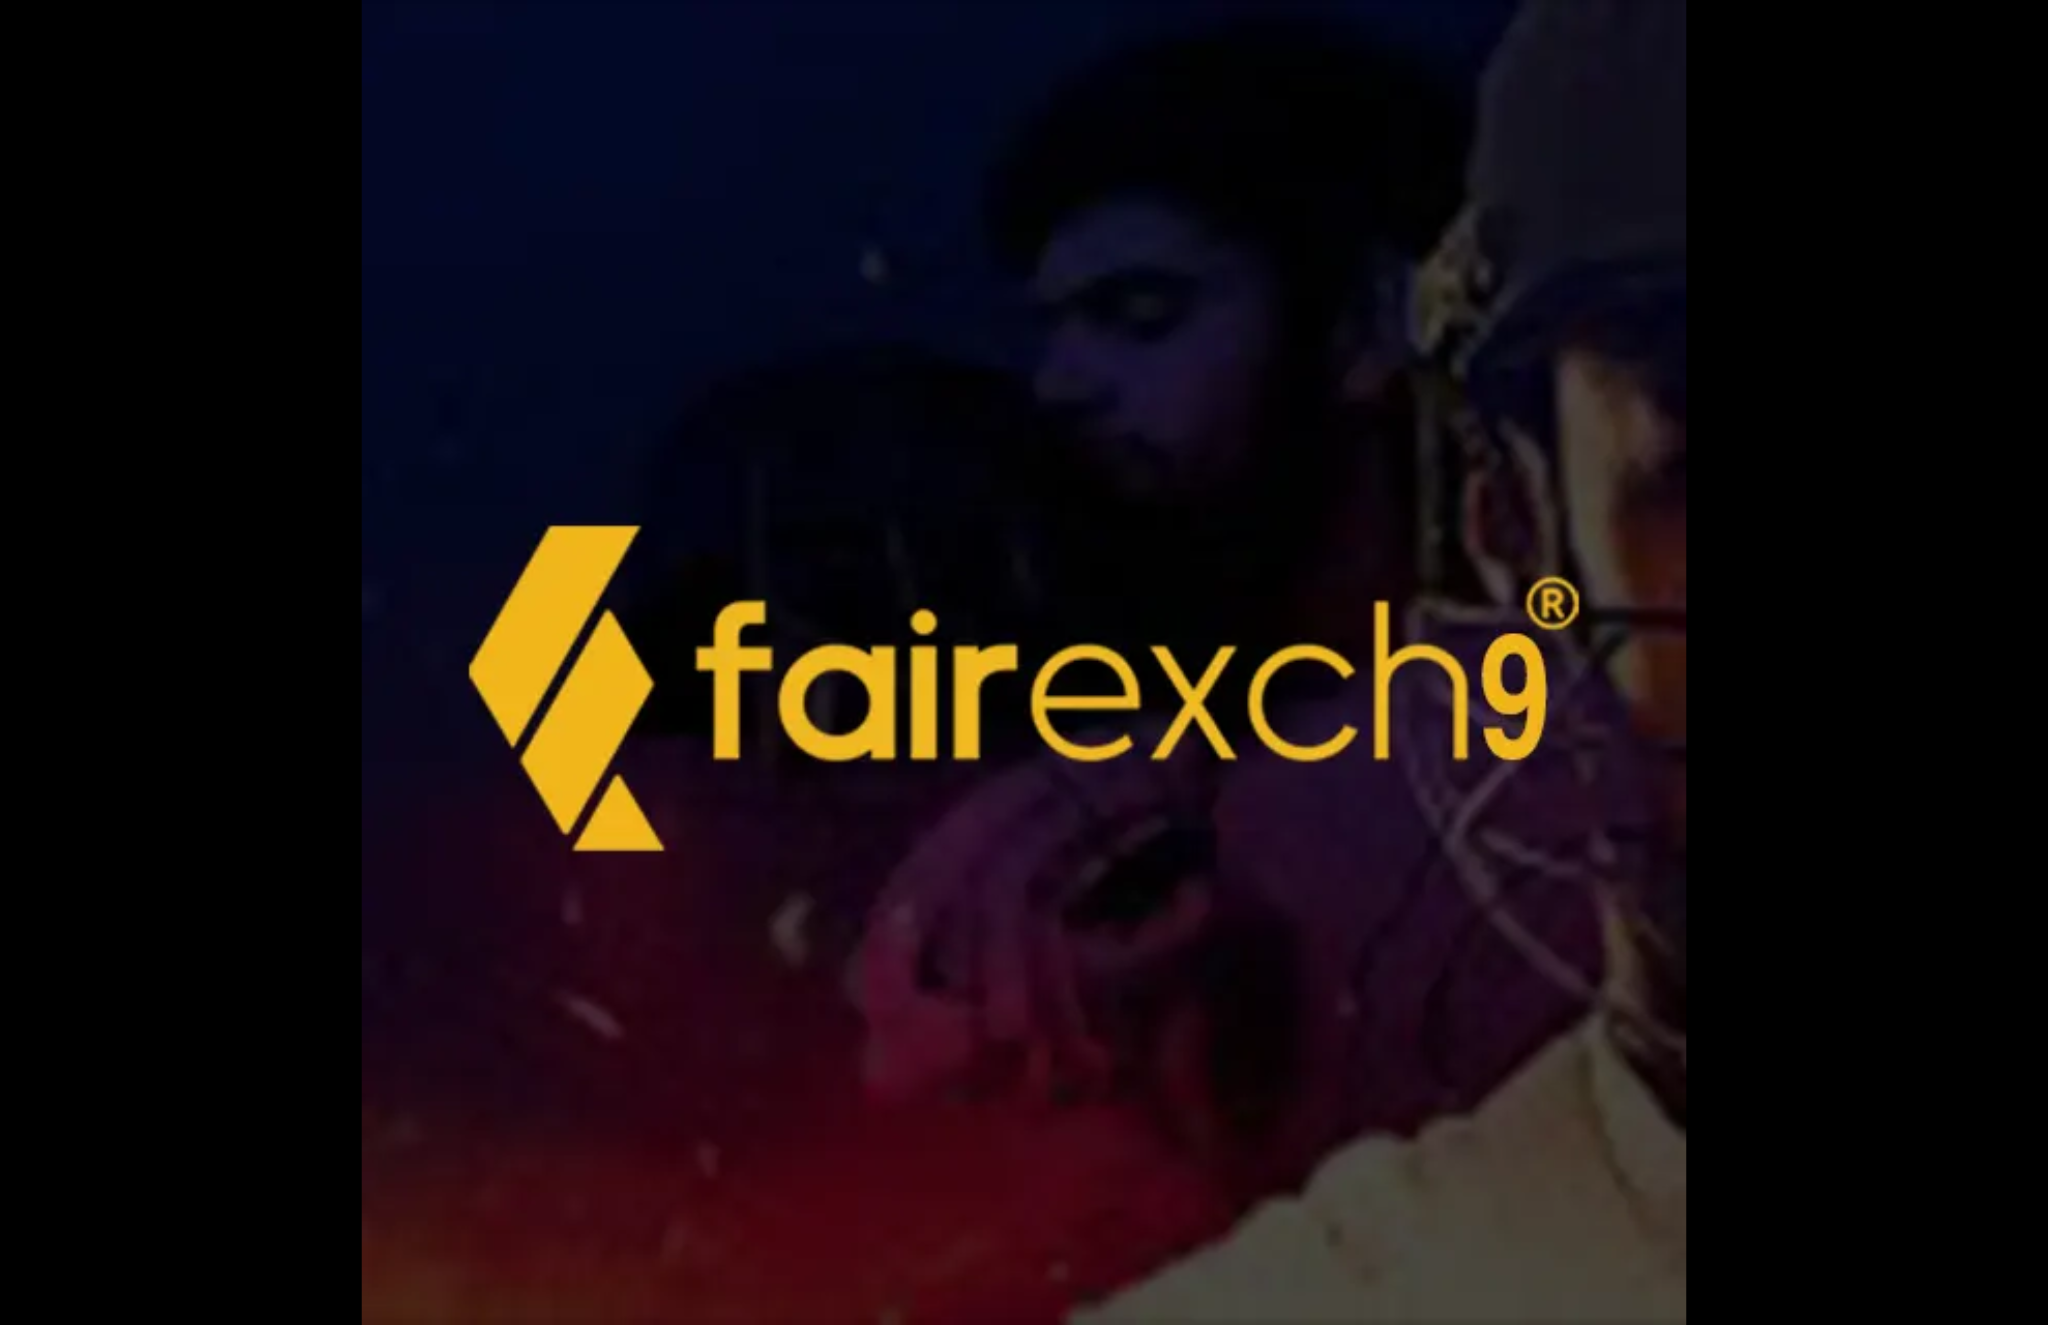 Fairexch9